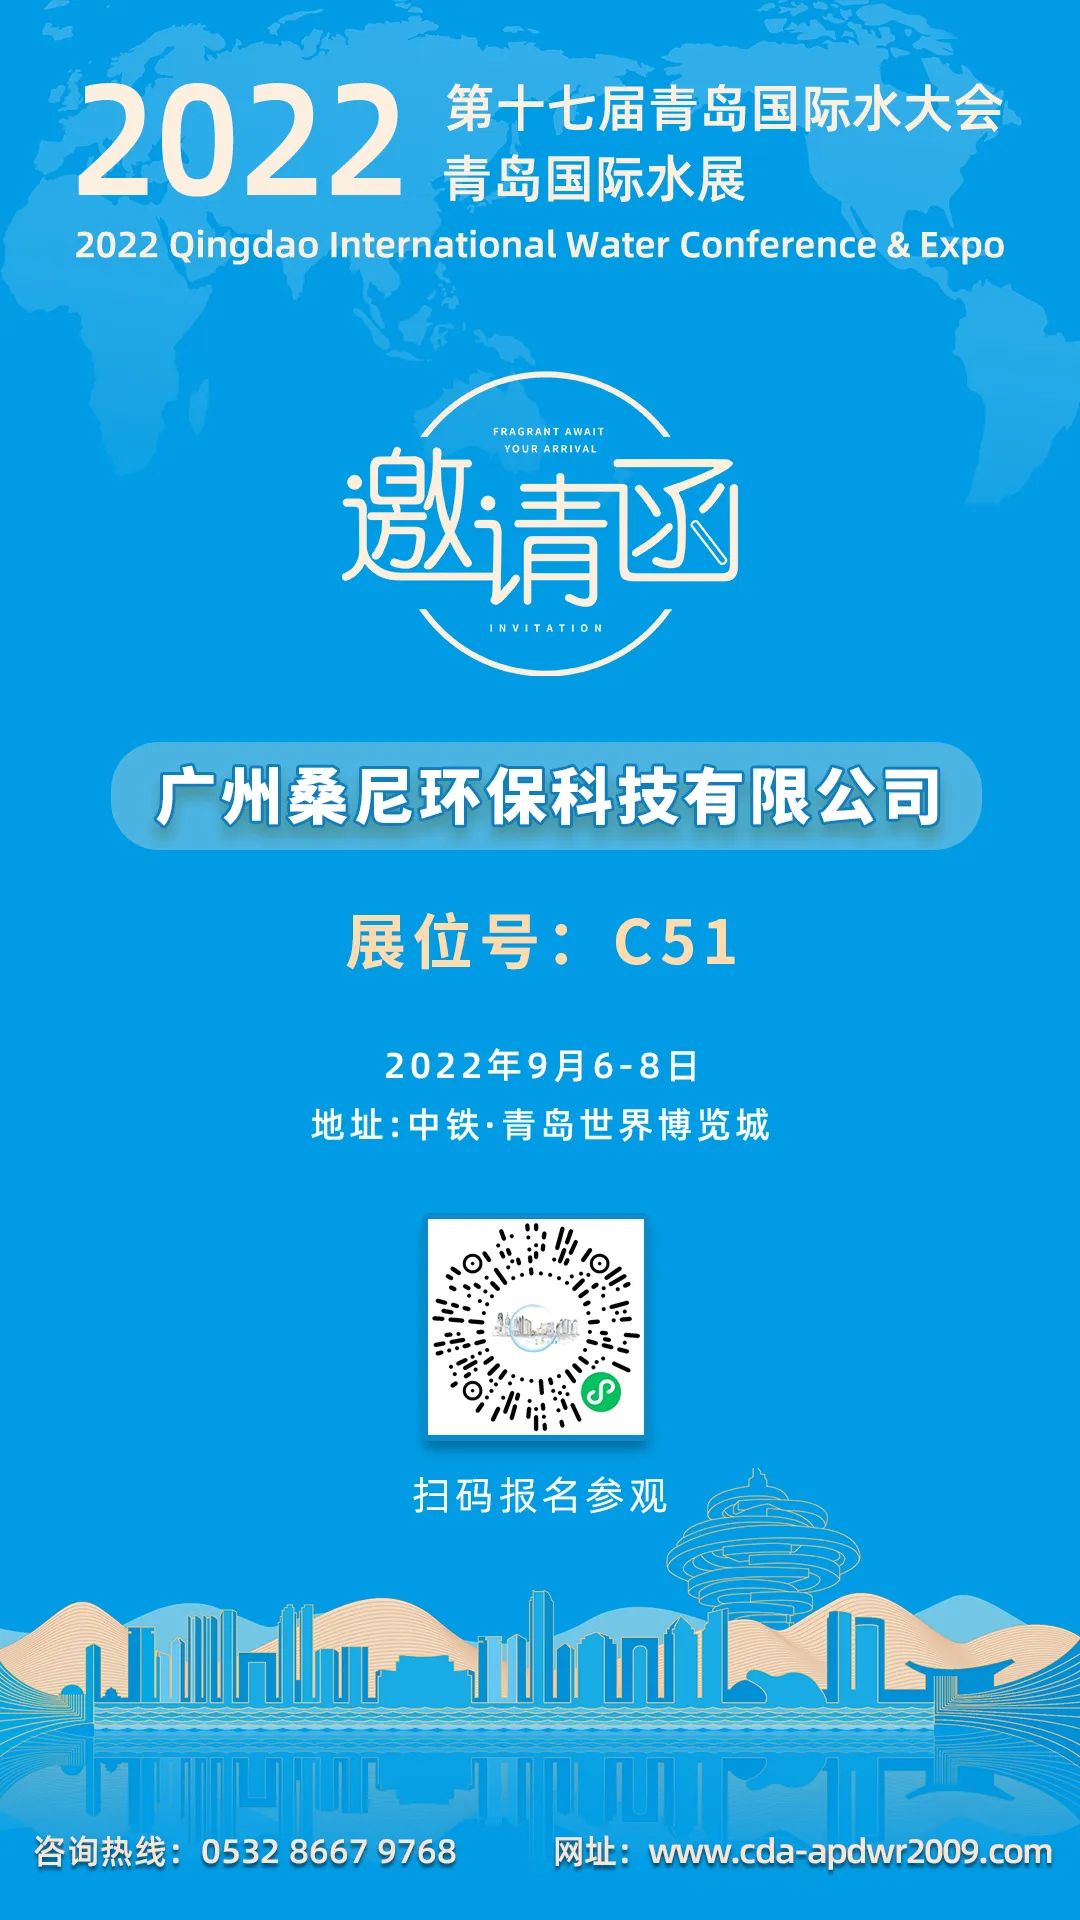 邀请函 | 广州桑尼与您相约2022青岛国际水大会暨青岛国际水展